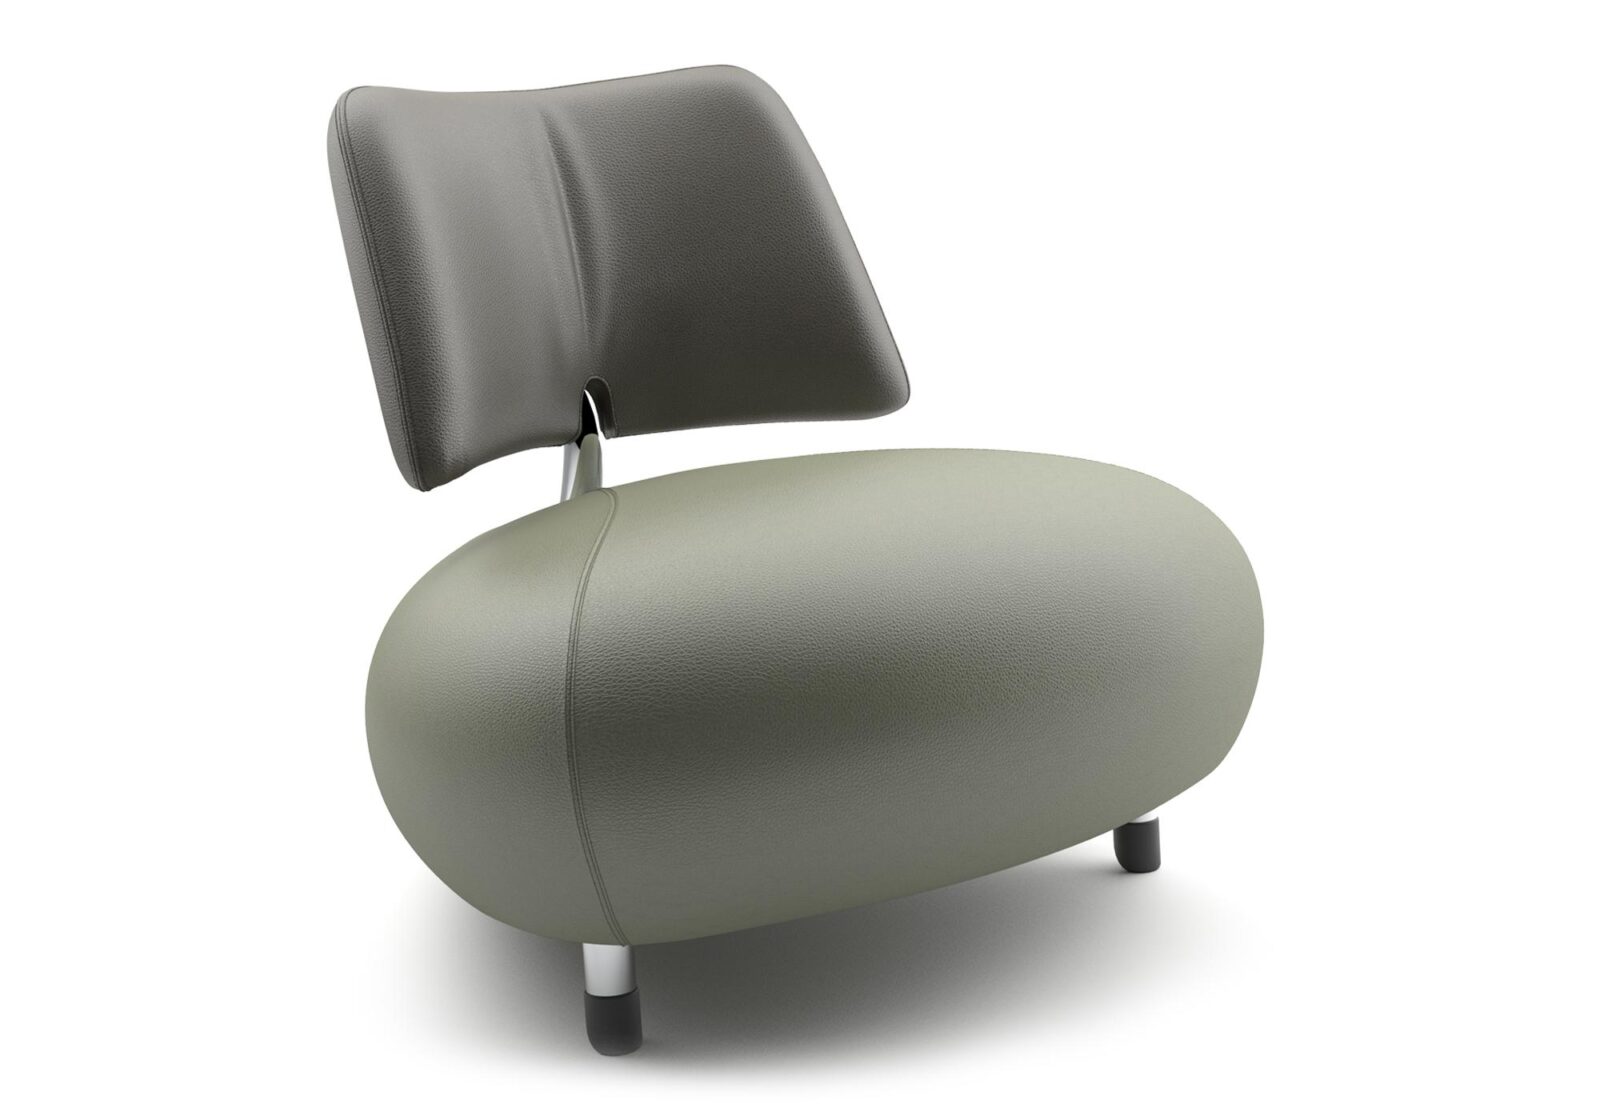 Sessel Pallone mit Rückenlehne. Bezug: Leder. Farbe: Olivine-Taupe. Erhältlich bei Möbel Gallati.